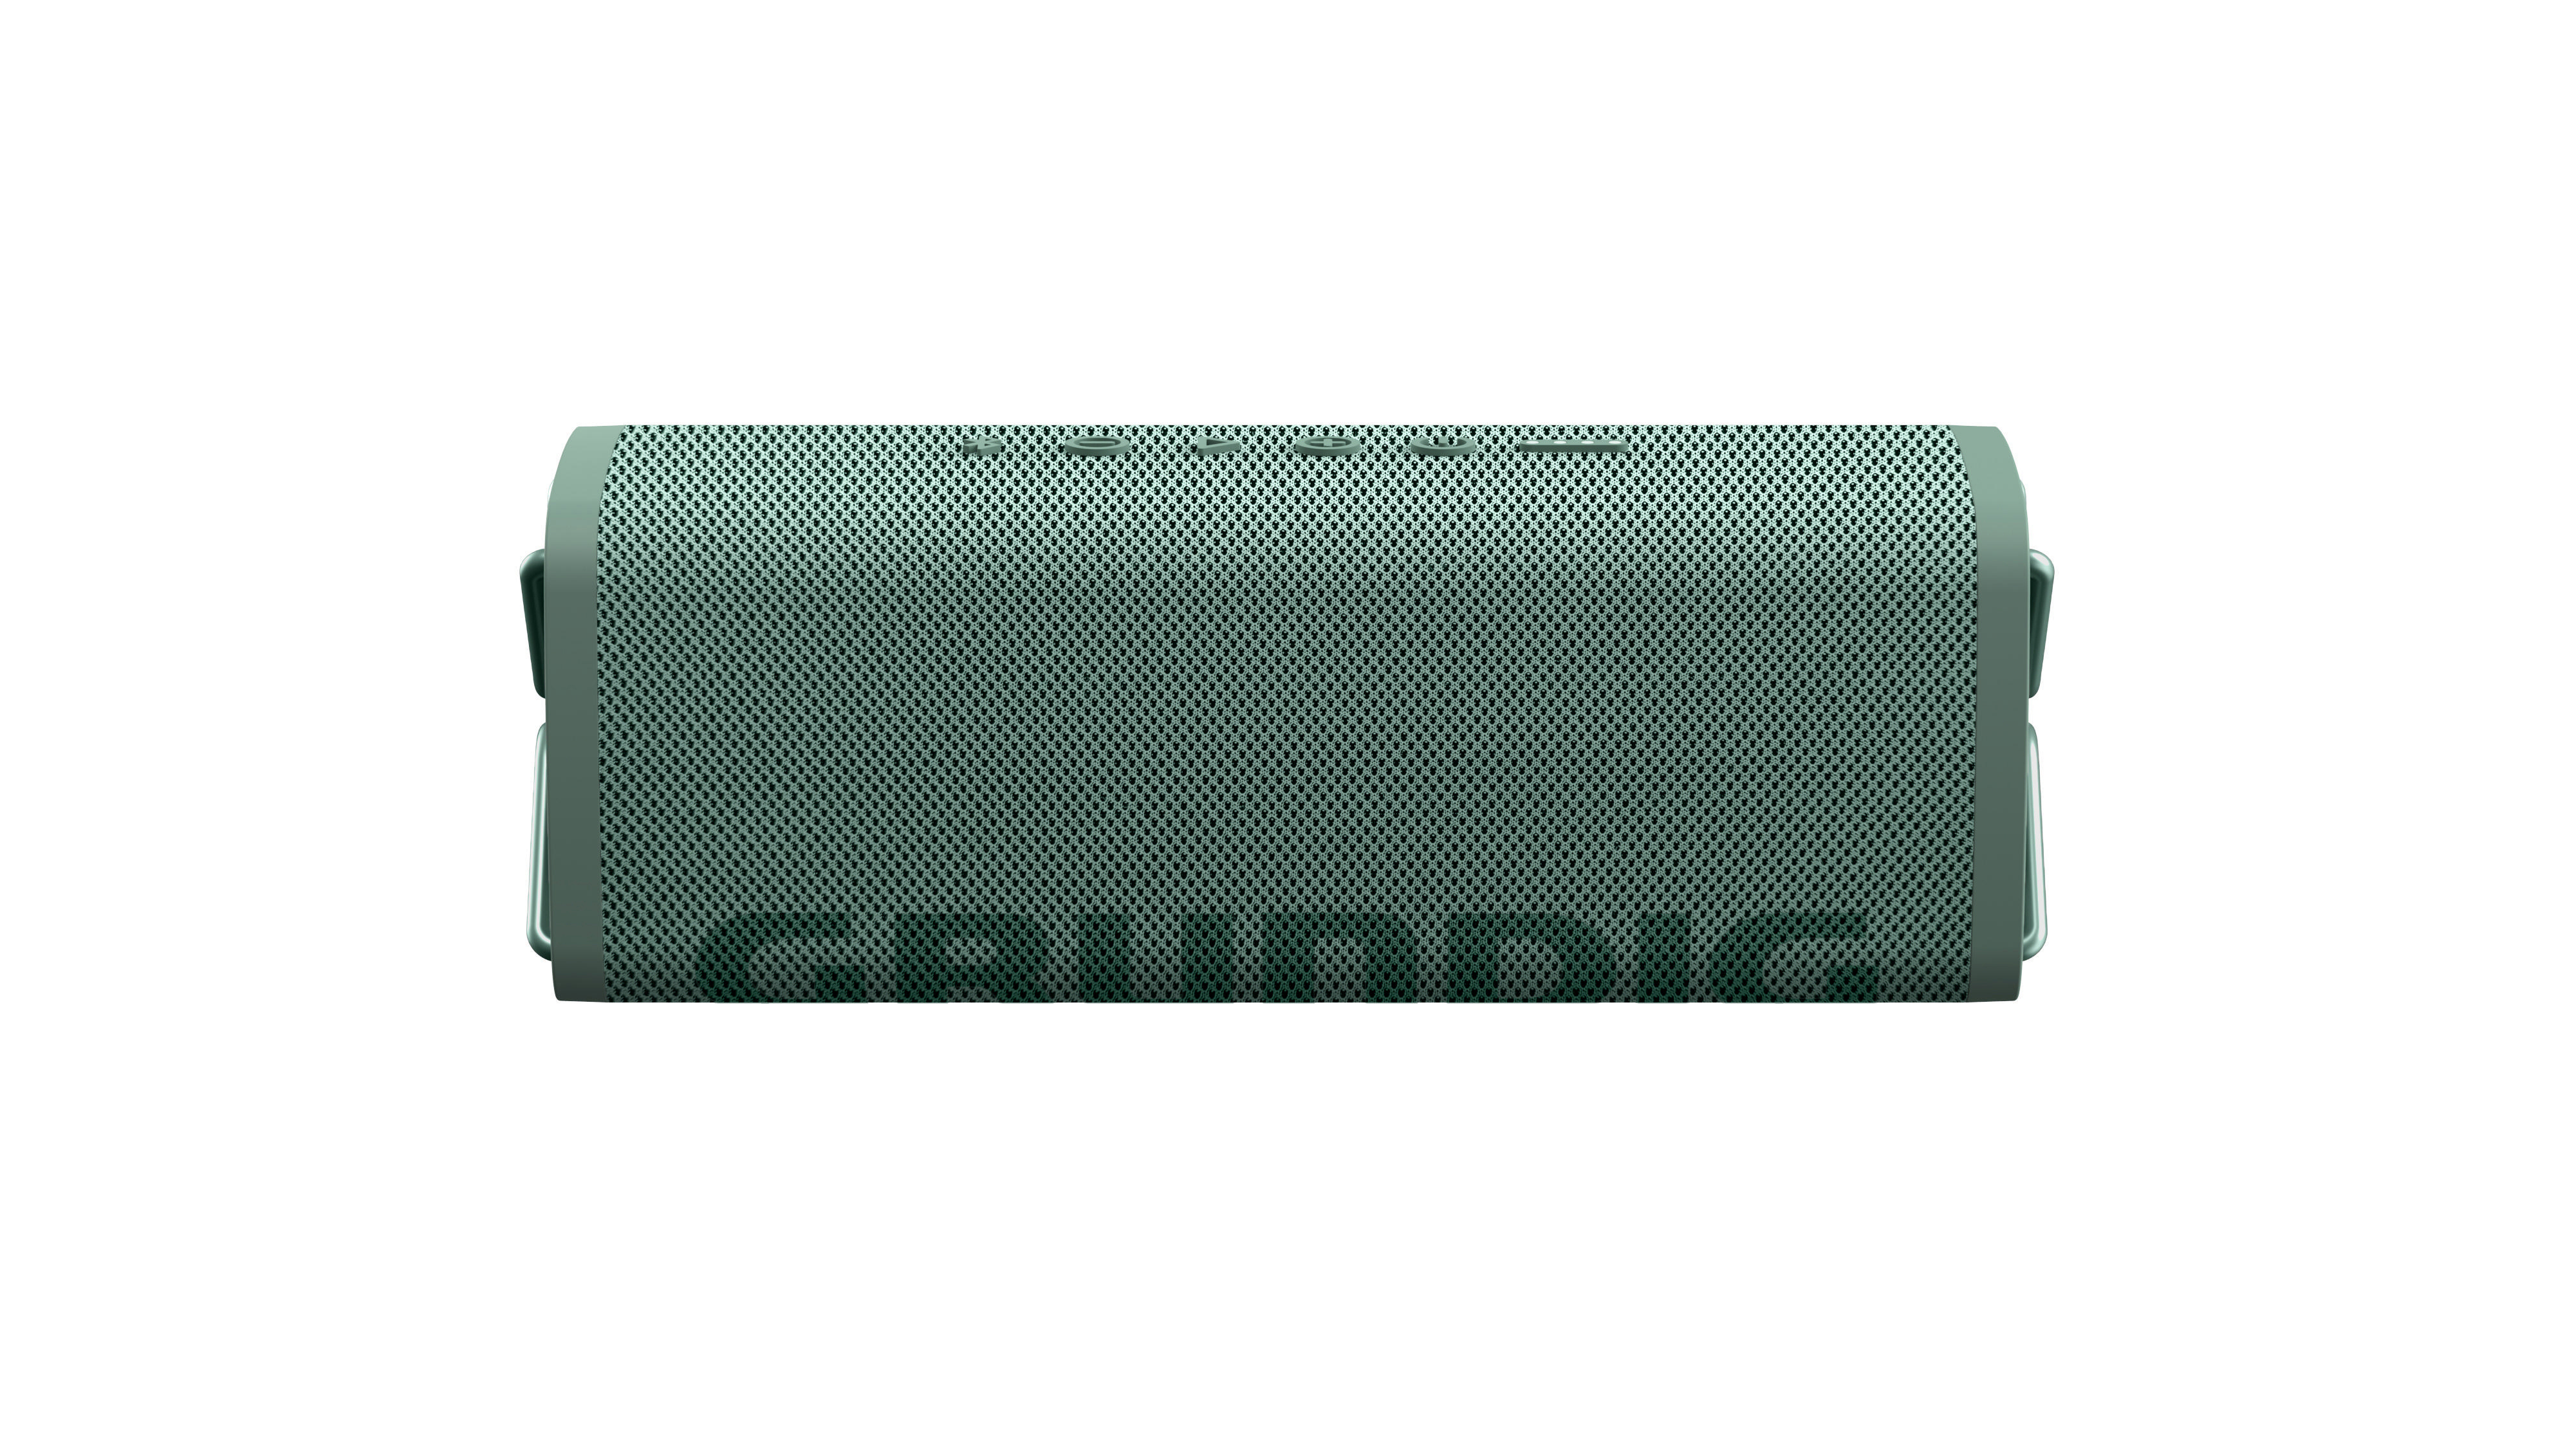 GBT Bluetooth GRUNDIG Lautsprecher, Grün, Wasserfest CLUB